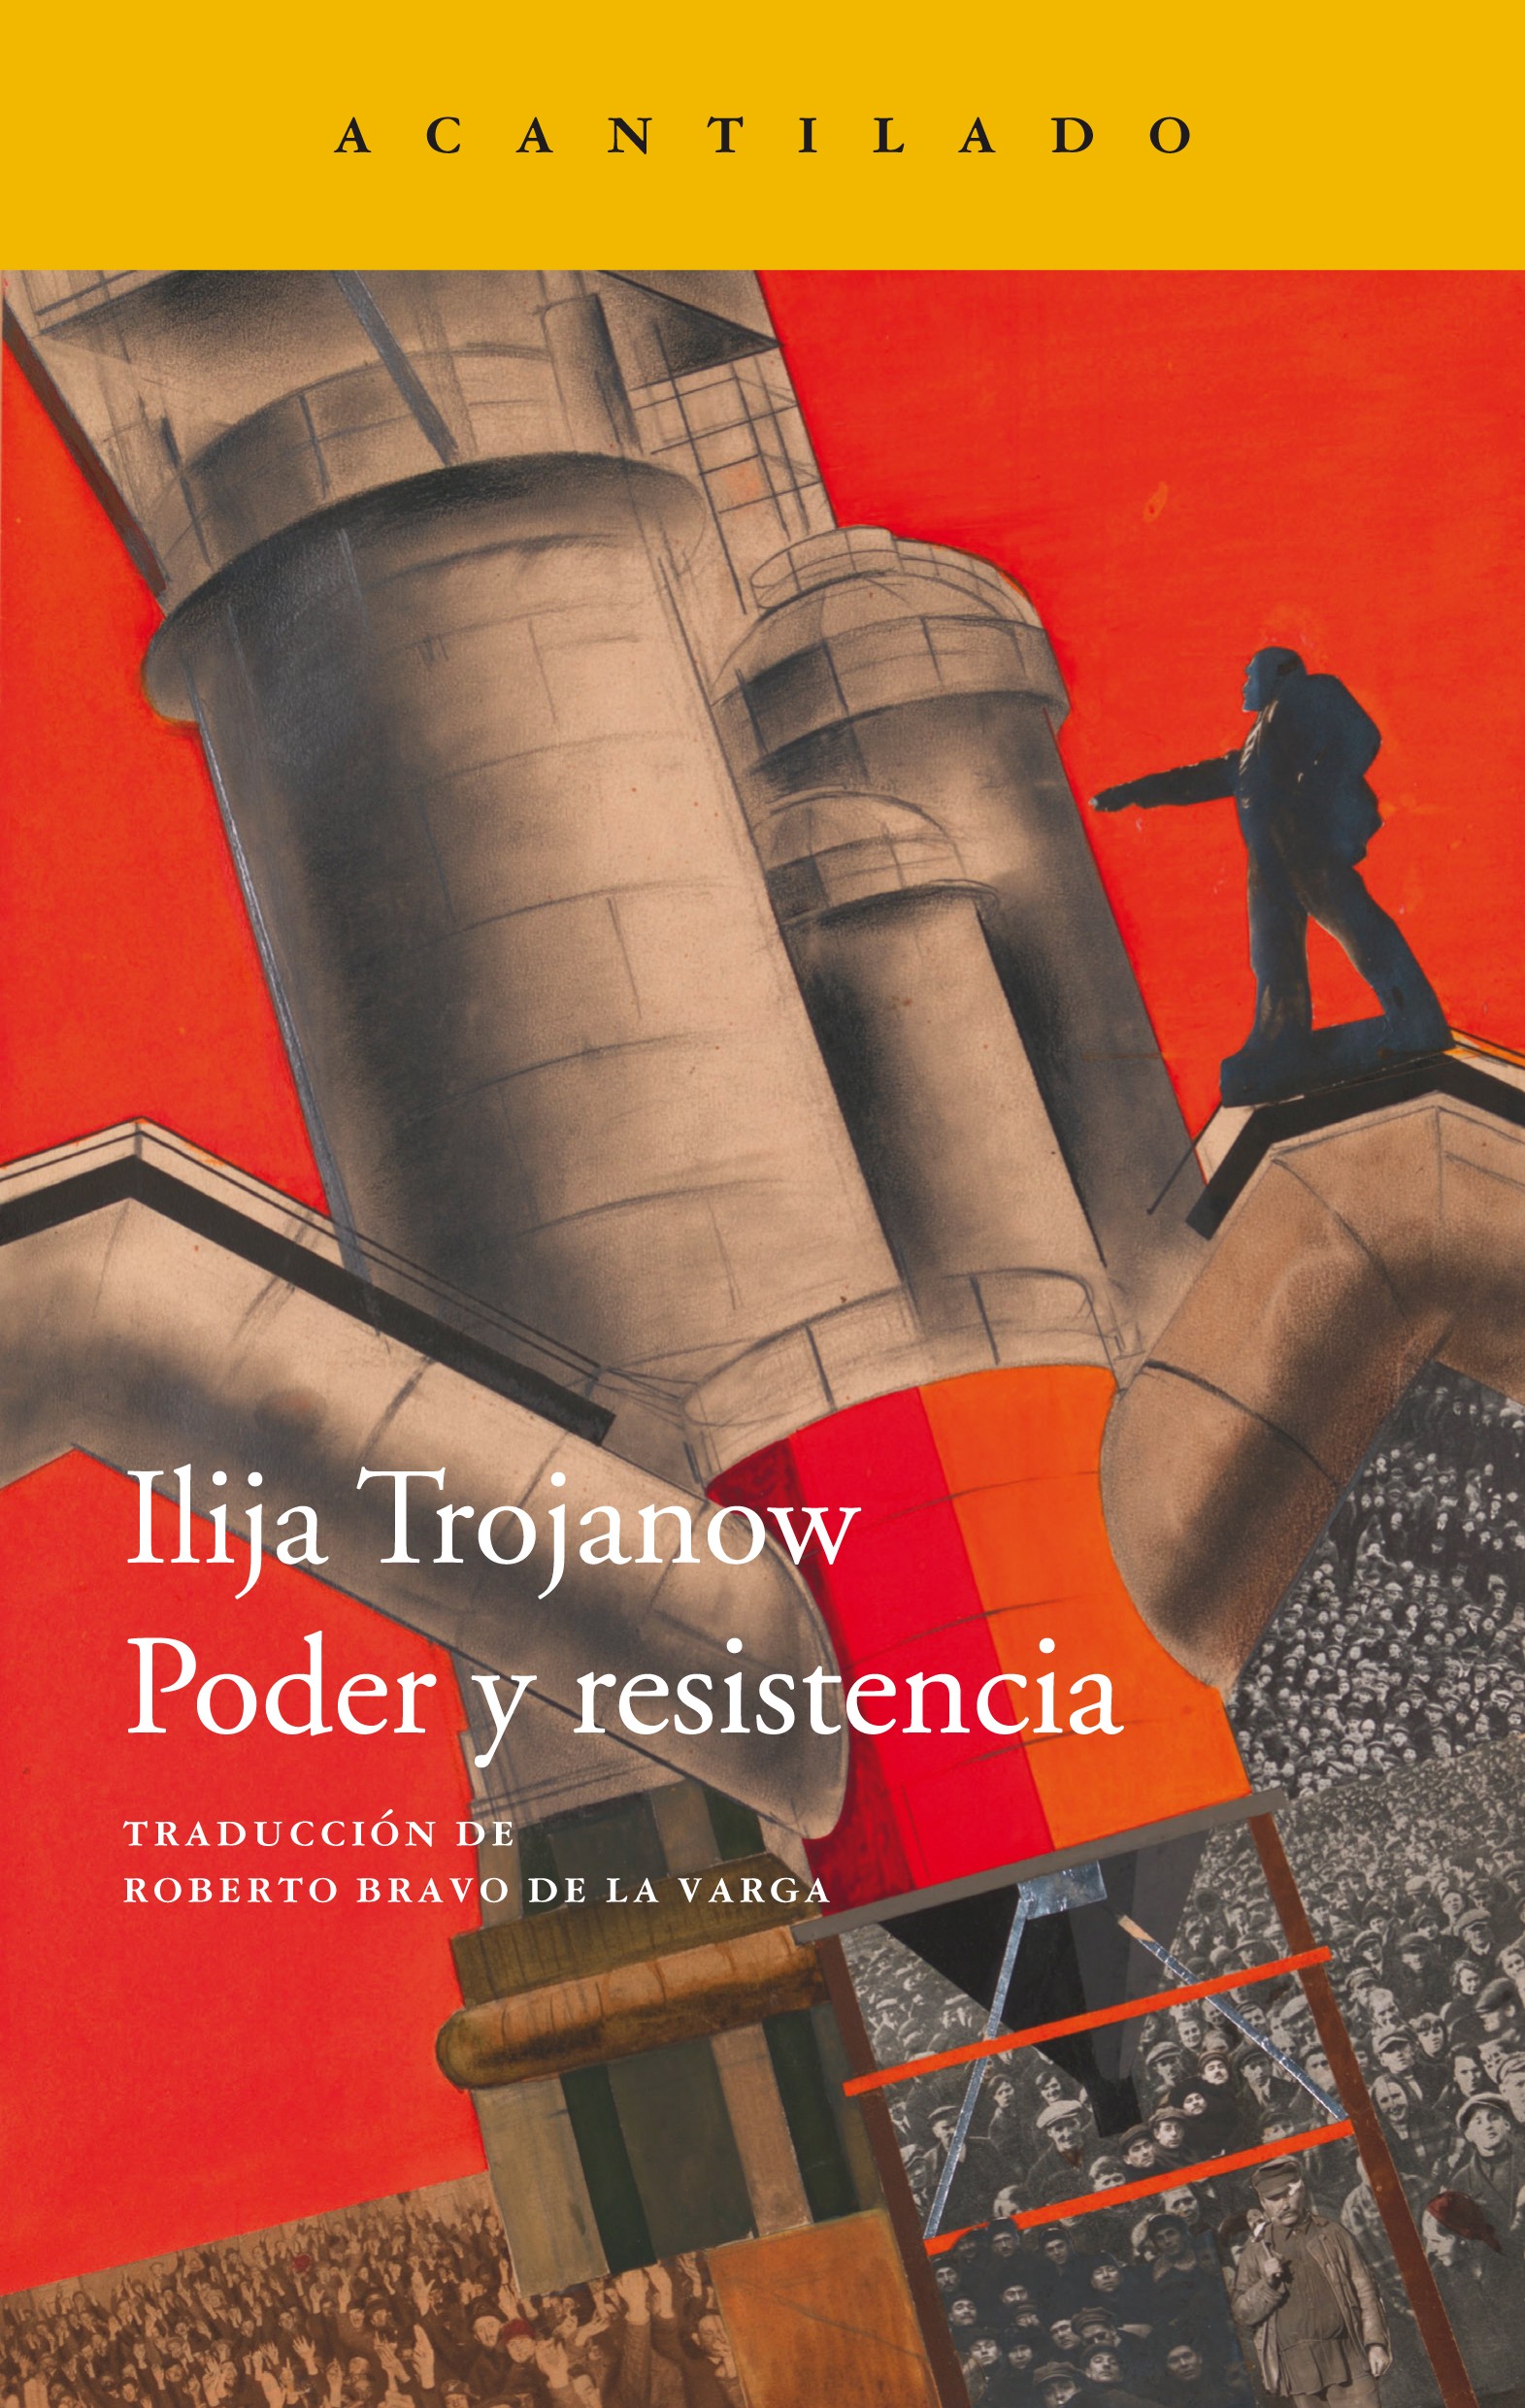 Zenda recomienda: Poder y resistencia, de Ilija Trojanow